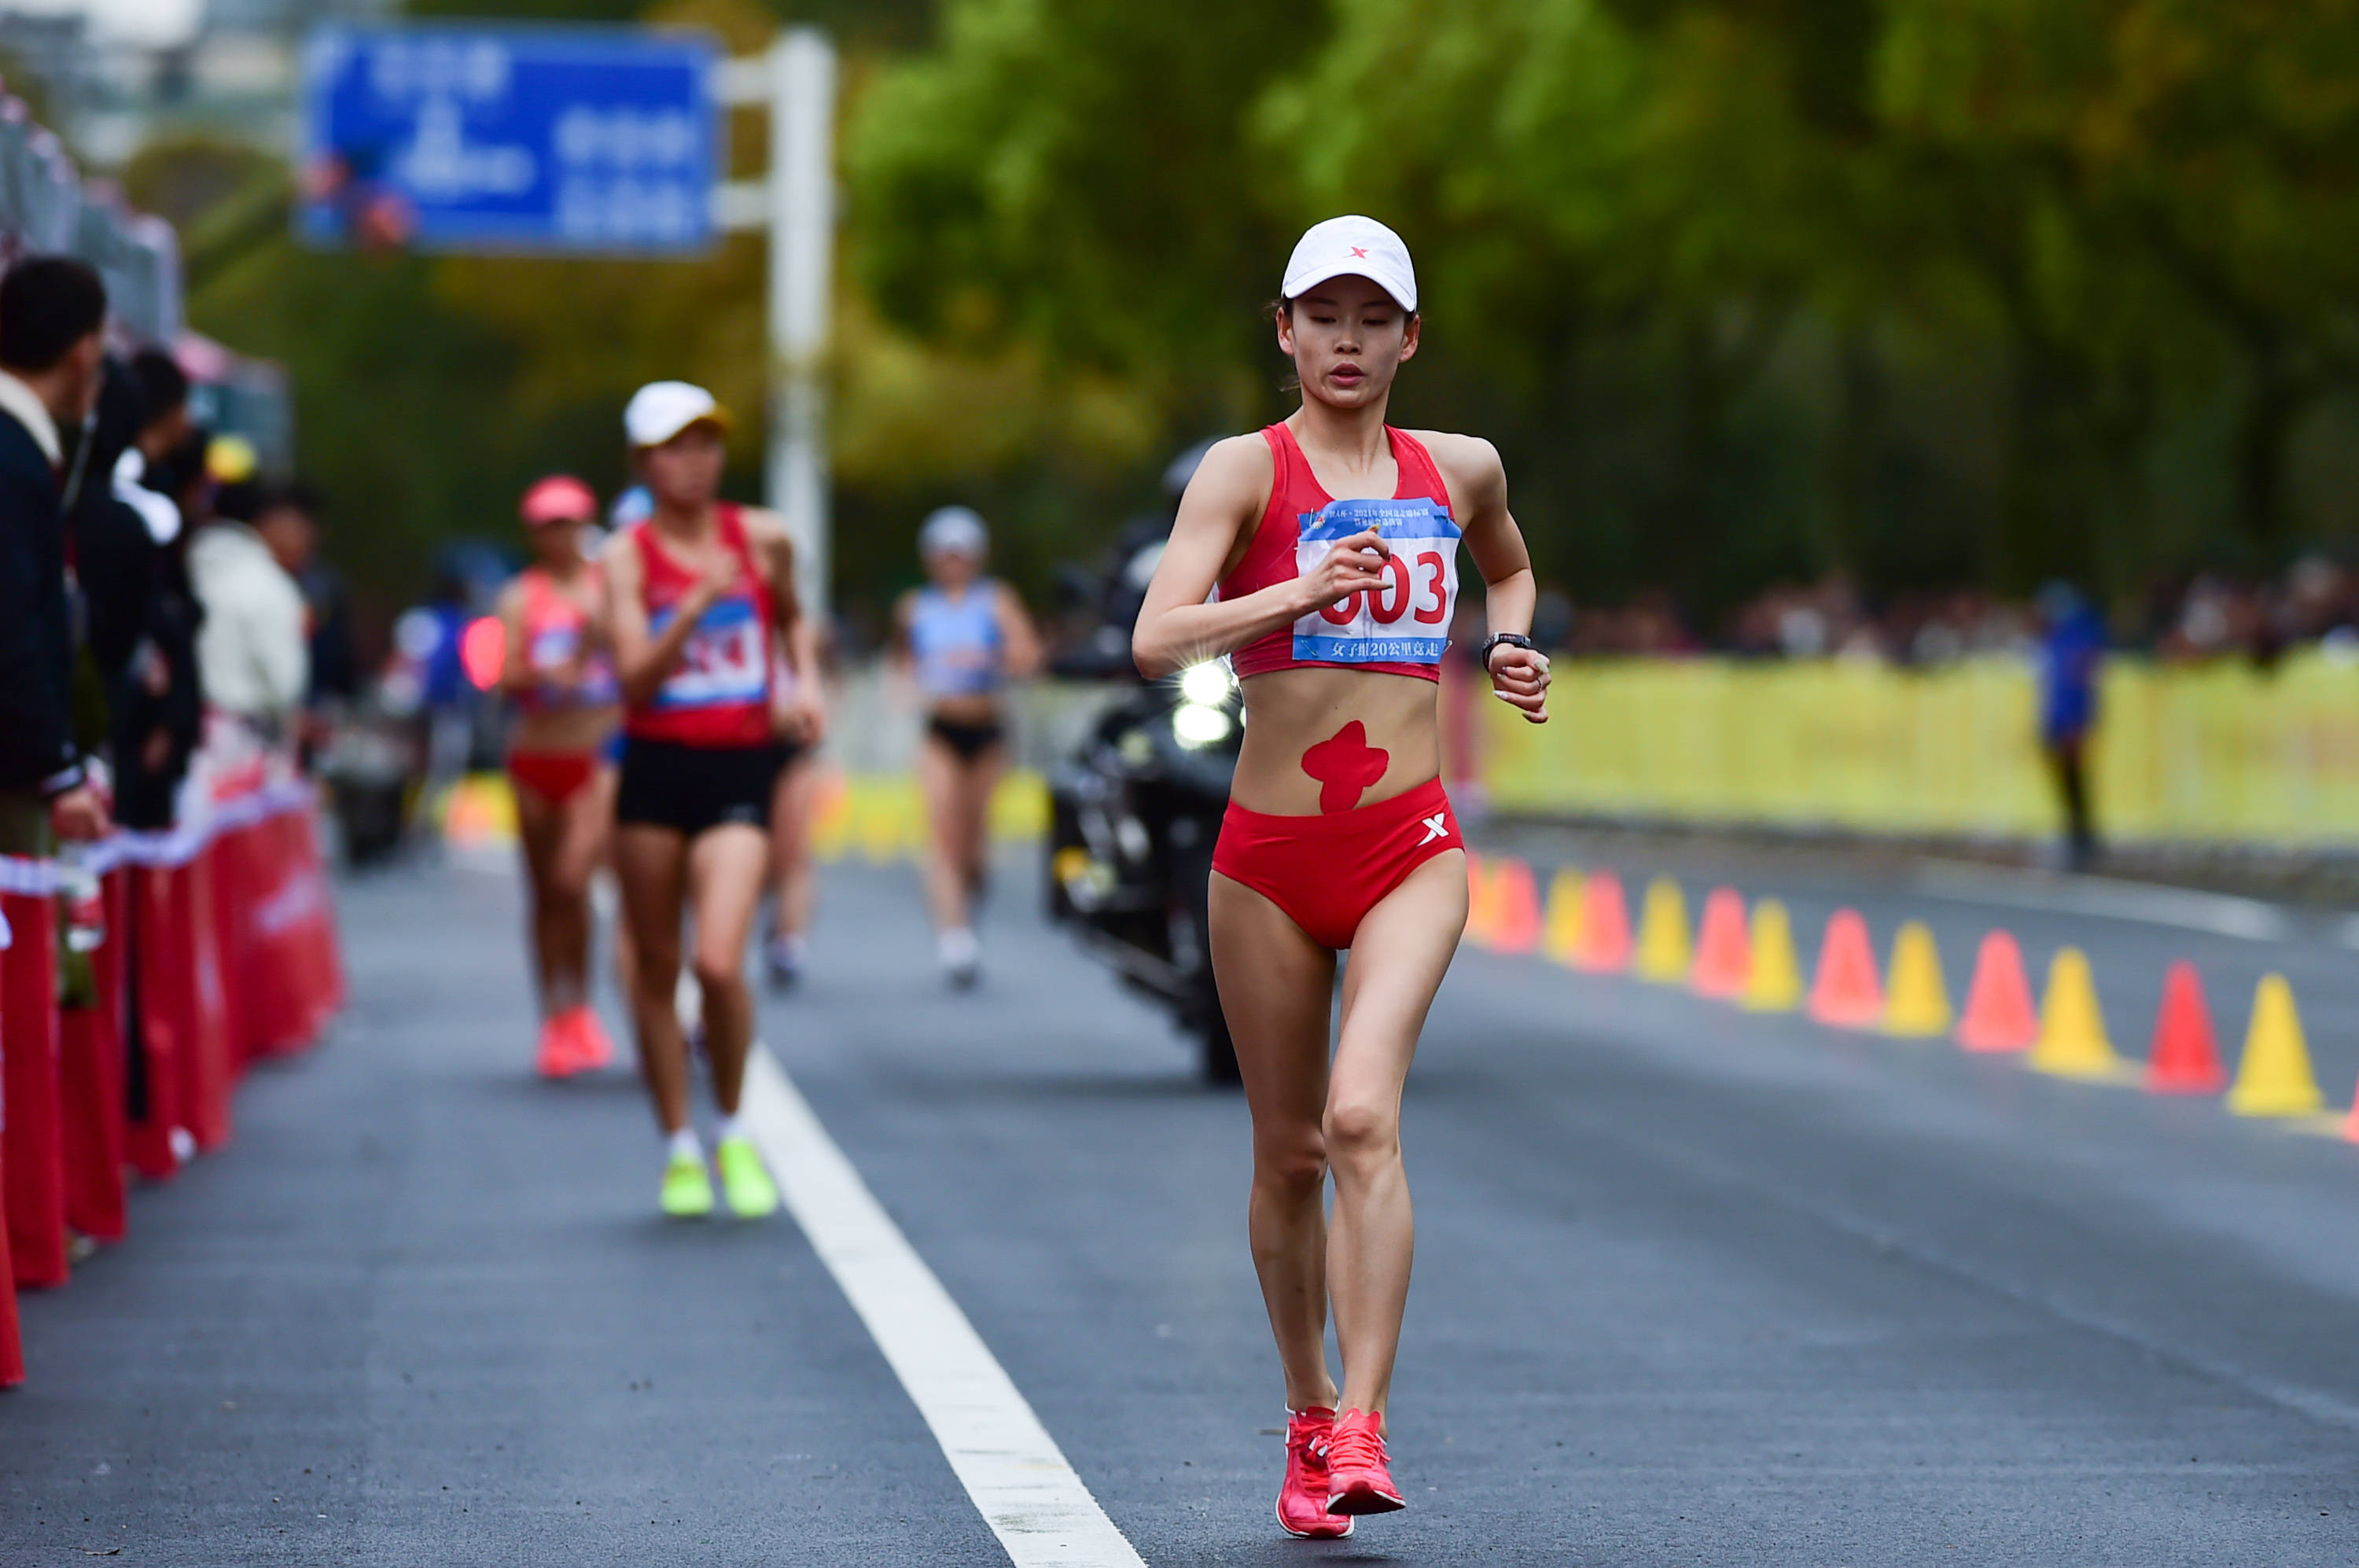 全国竞走锦标赛:杨家玉,刘虹打破女子20公里竞走世界纪录